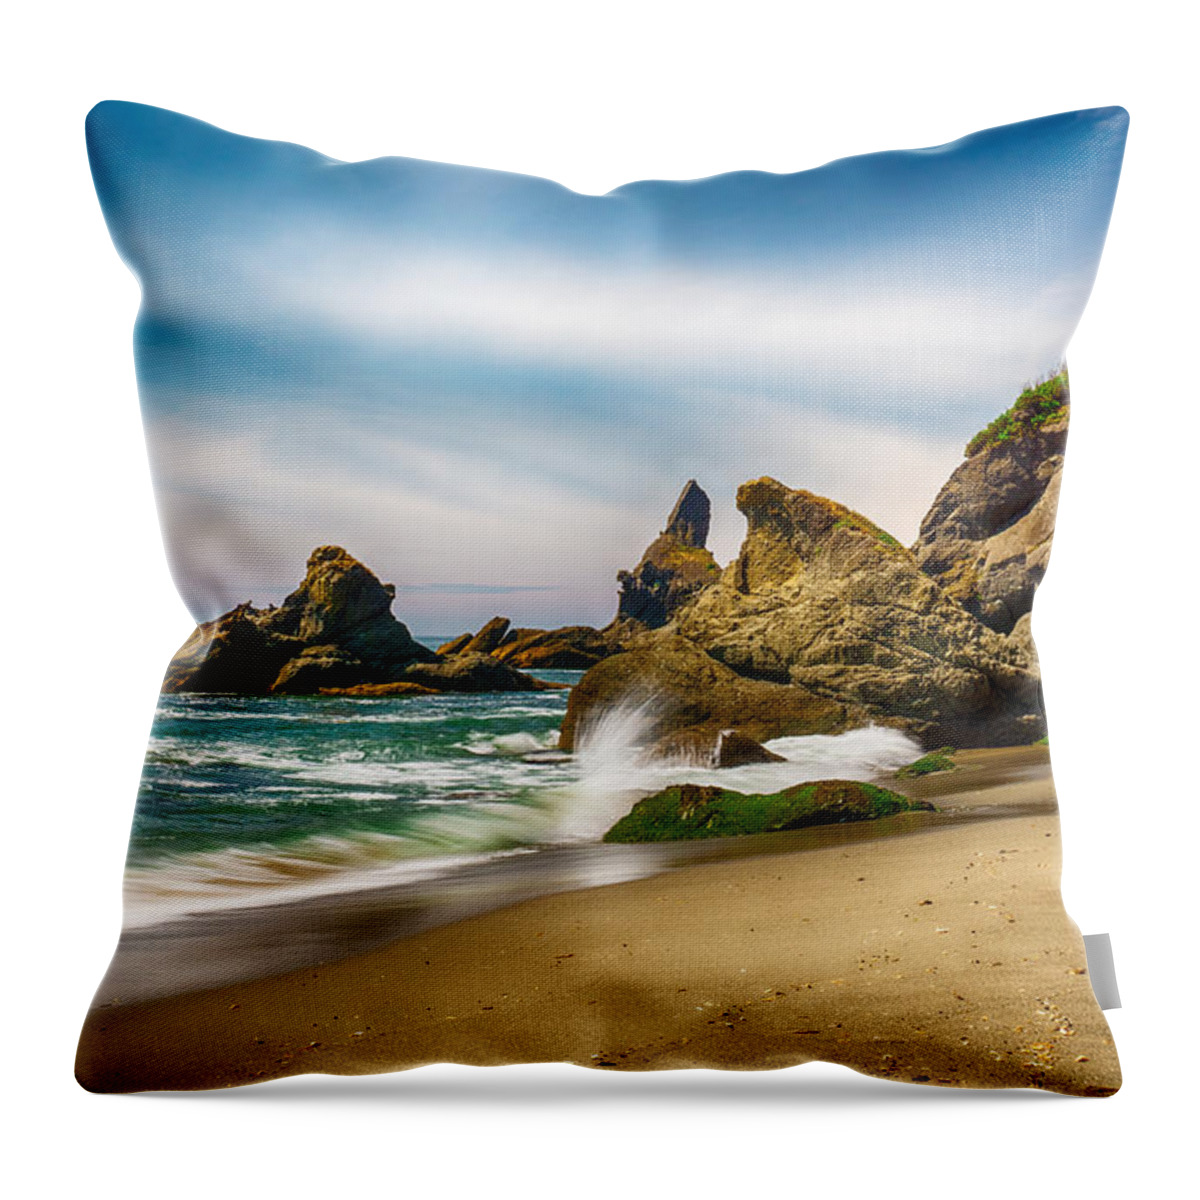 Shi Throw Pillow featuring the photograph Shi Shi Beach Rocks by Amanda Jones